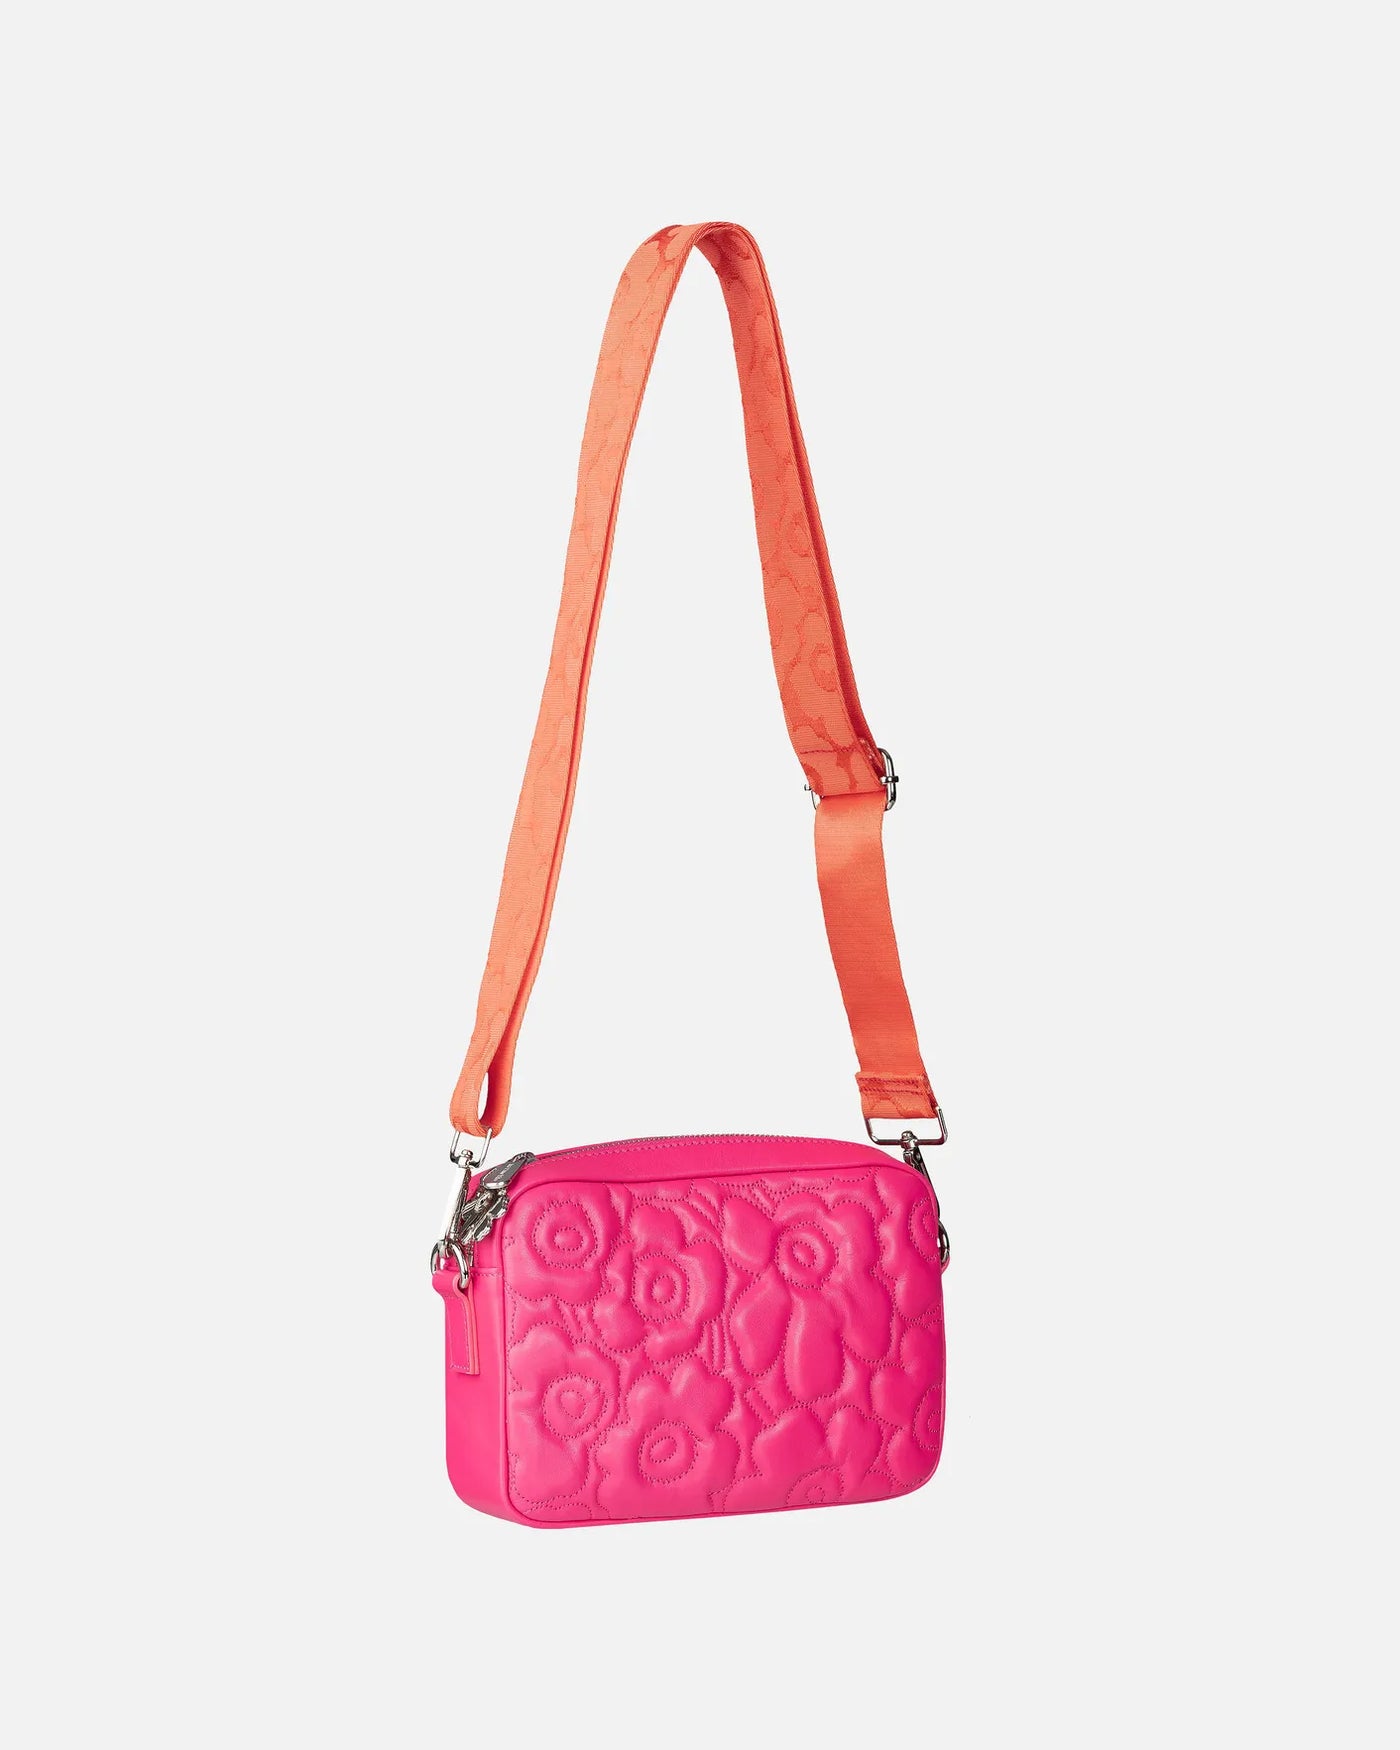 Soft Gratha Embossed Unikko Leather Shoulder Bag, Pink/Orange